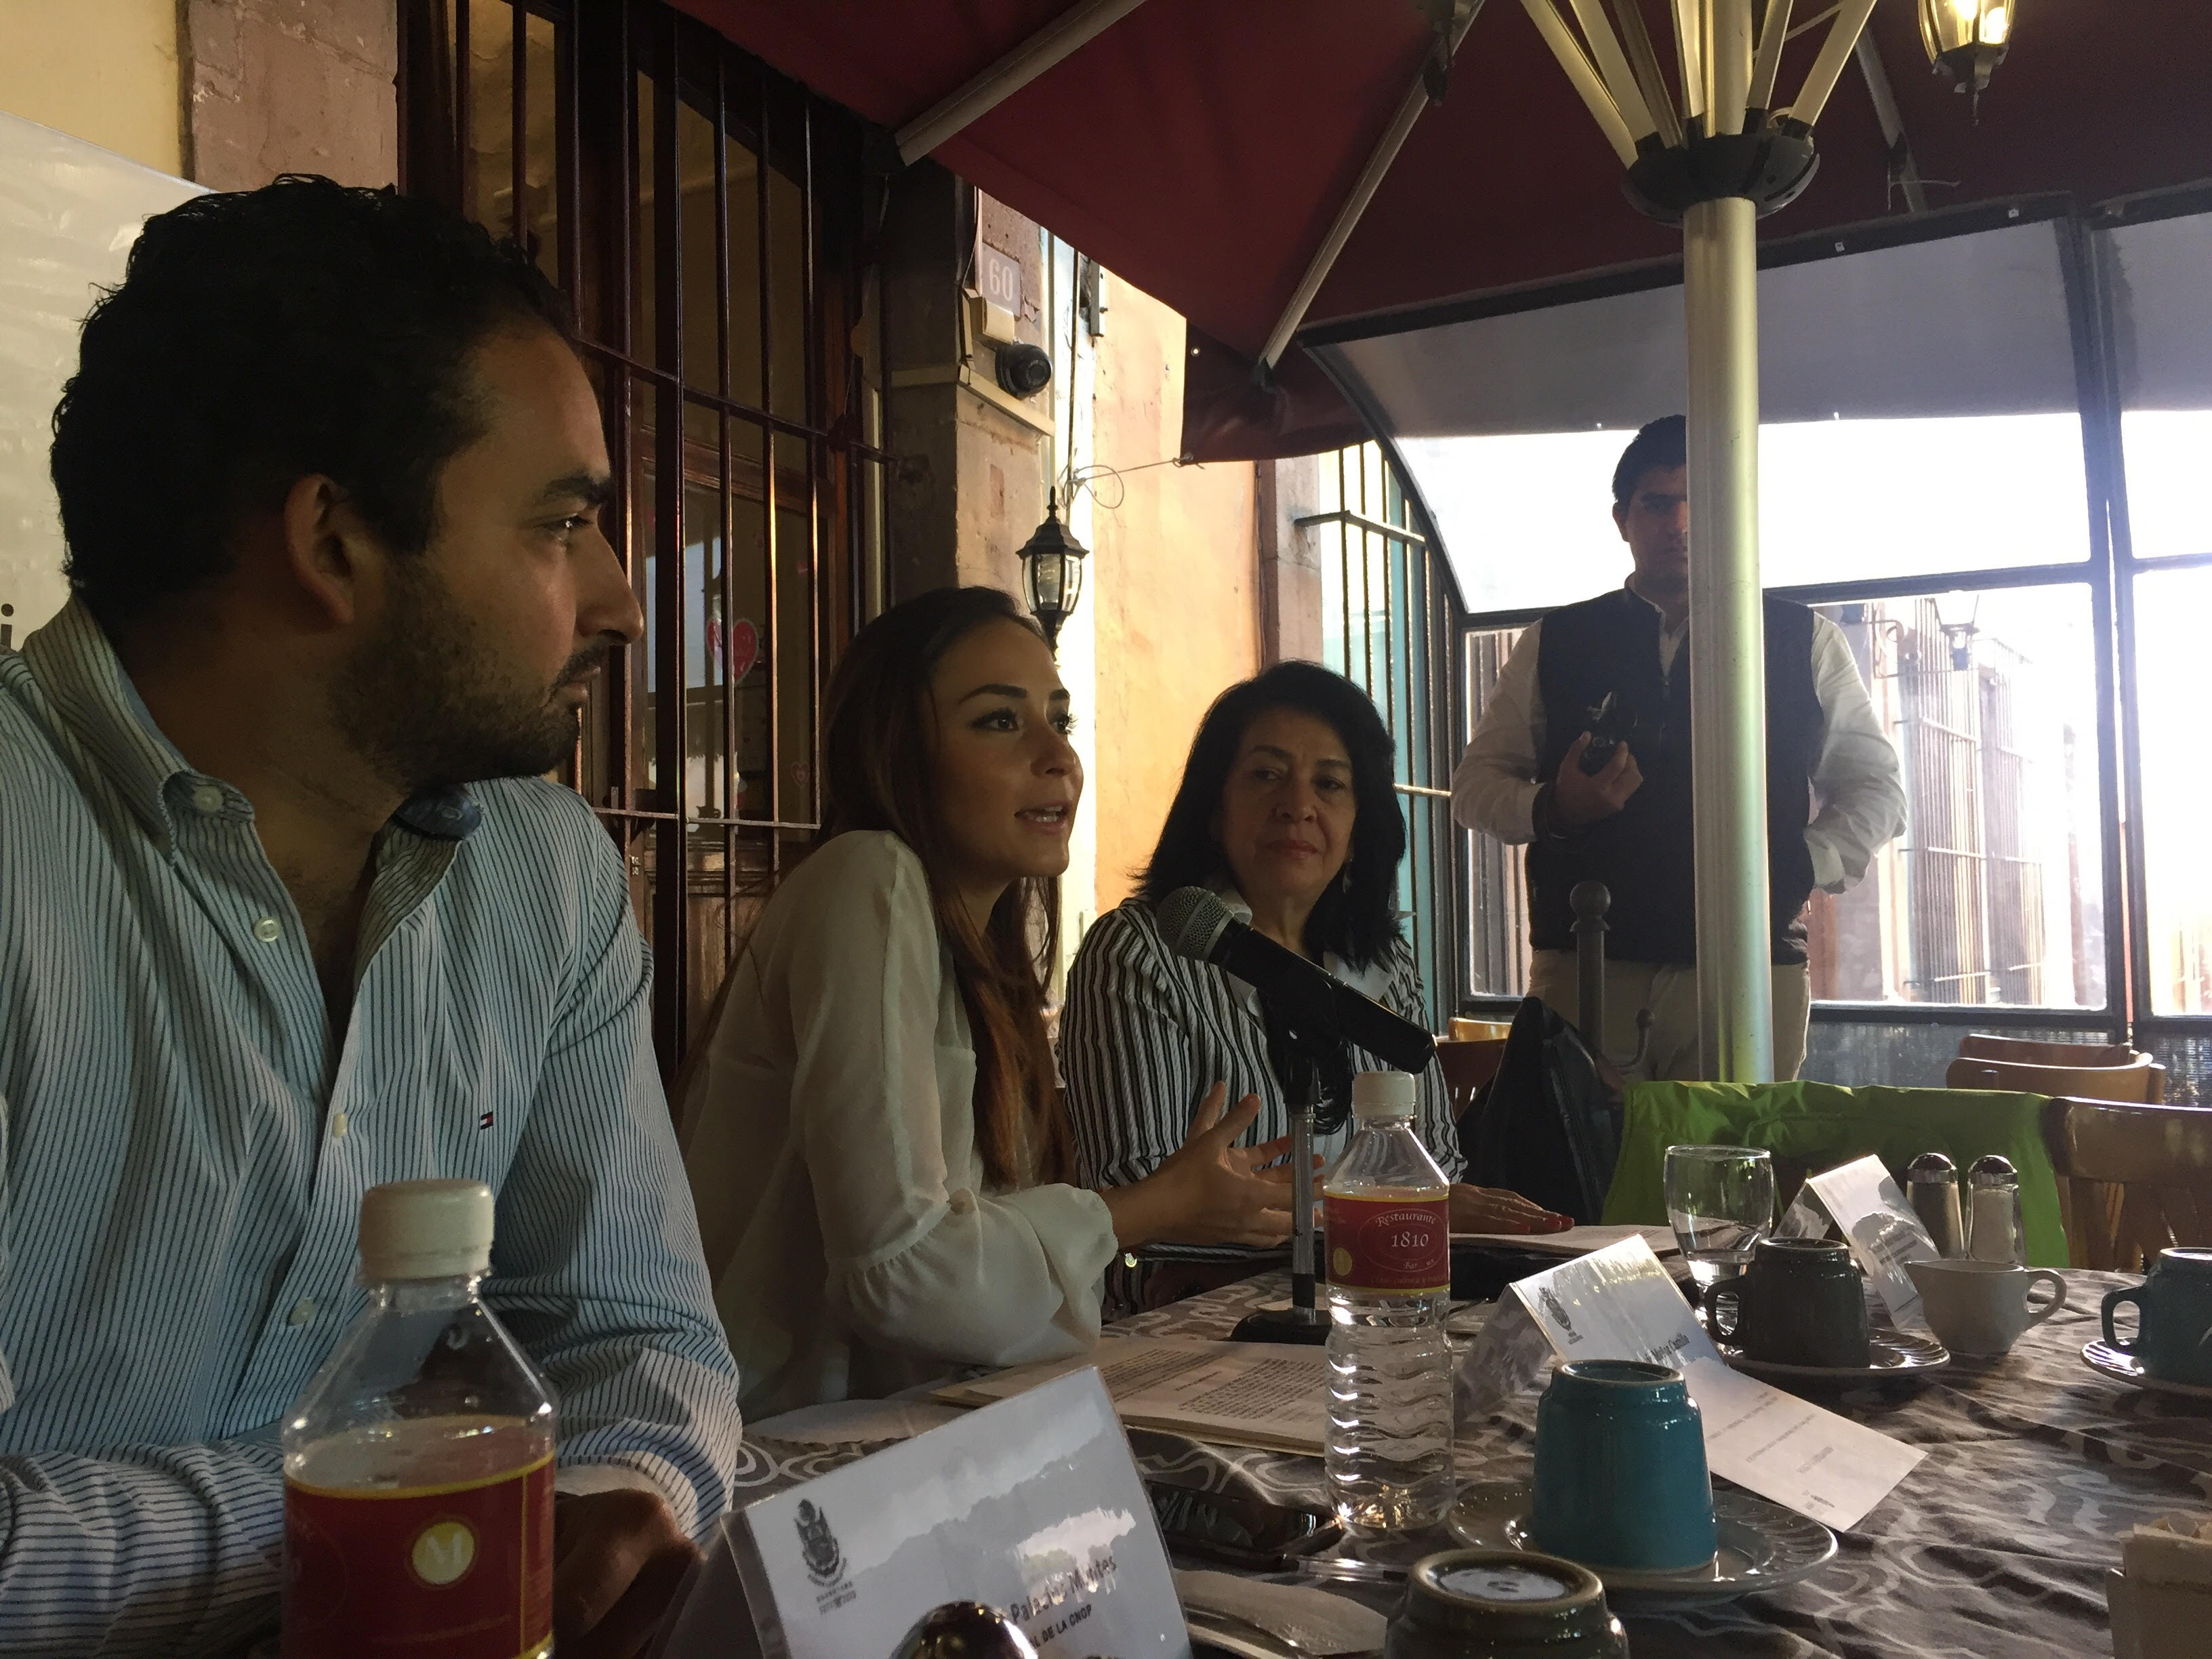  Diputada María Alemán presenta iniciativa que incluye cabildo abierto y revocación de mandato